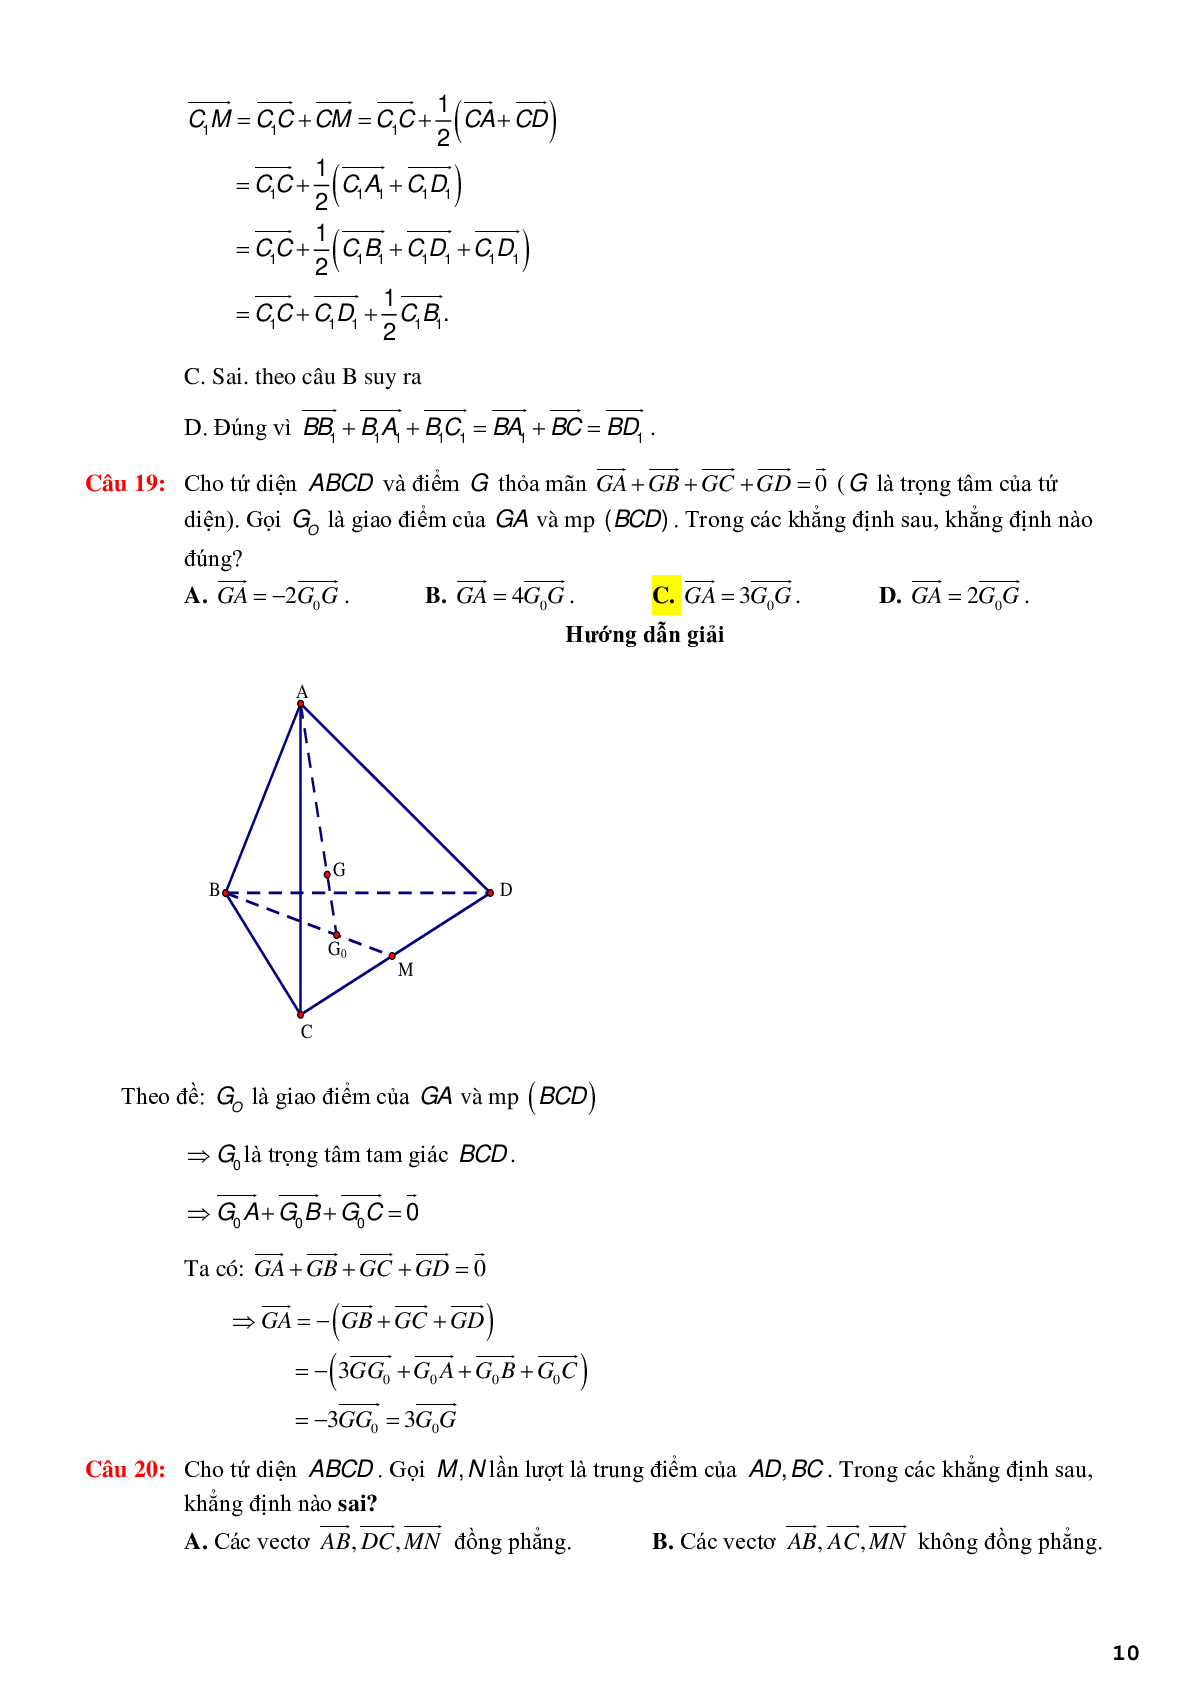 123 bài tập trắc nghiệm quan hệ vuông góc có lời giải chi tiết (trang 10)